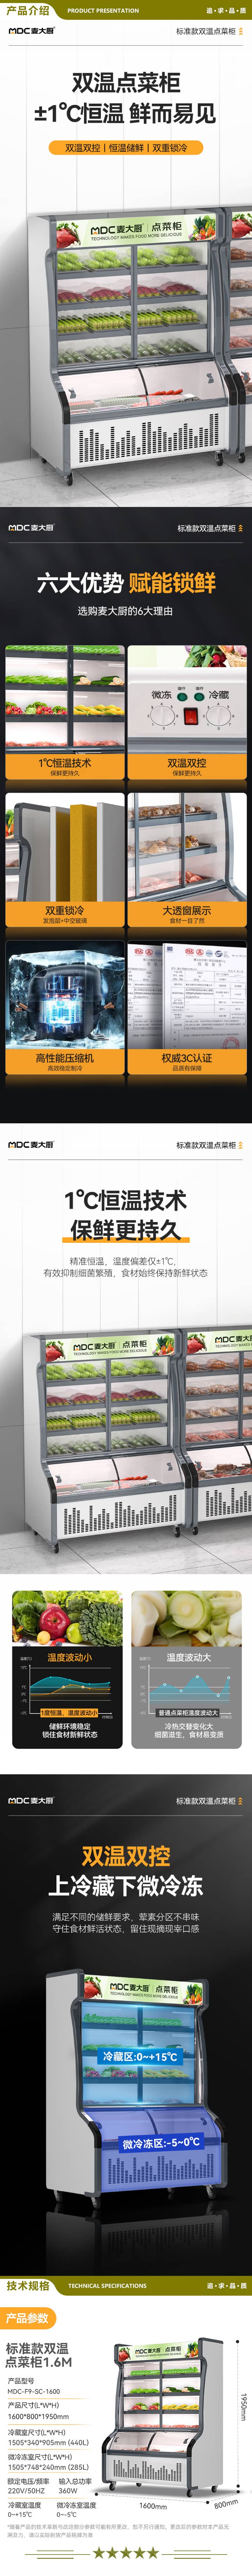 麦大厨 MDC-F9-SC-1600 点菜柜商用展示柜冷藏冷冻双用冷藏柜保鲜柜冰柜冒菜柜麻辣烫柜烧烤柜串串柜   2.jpg